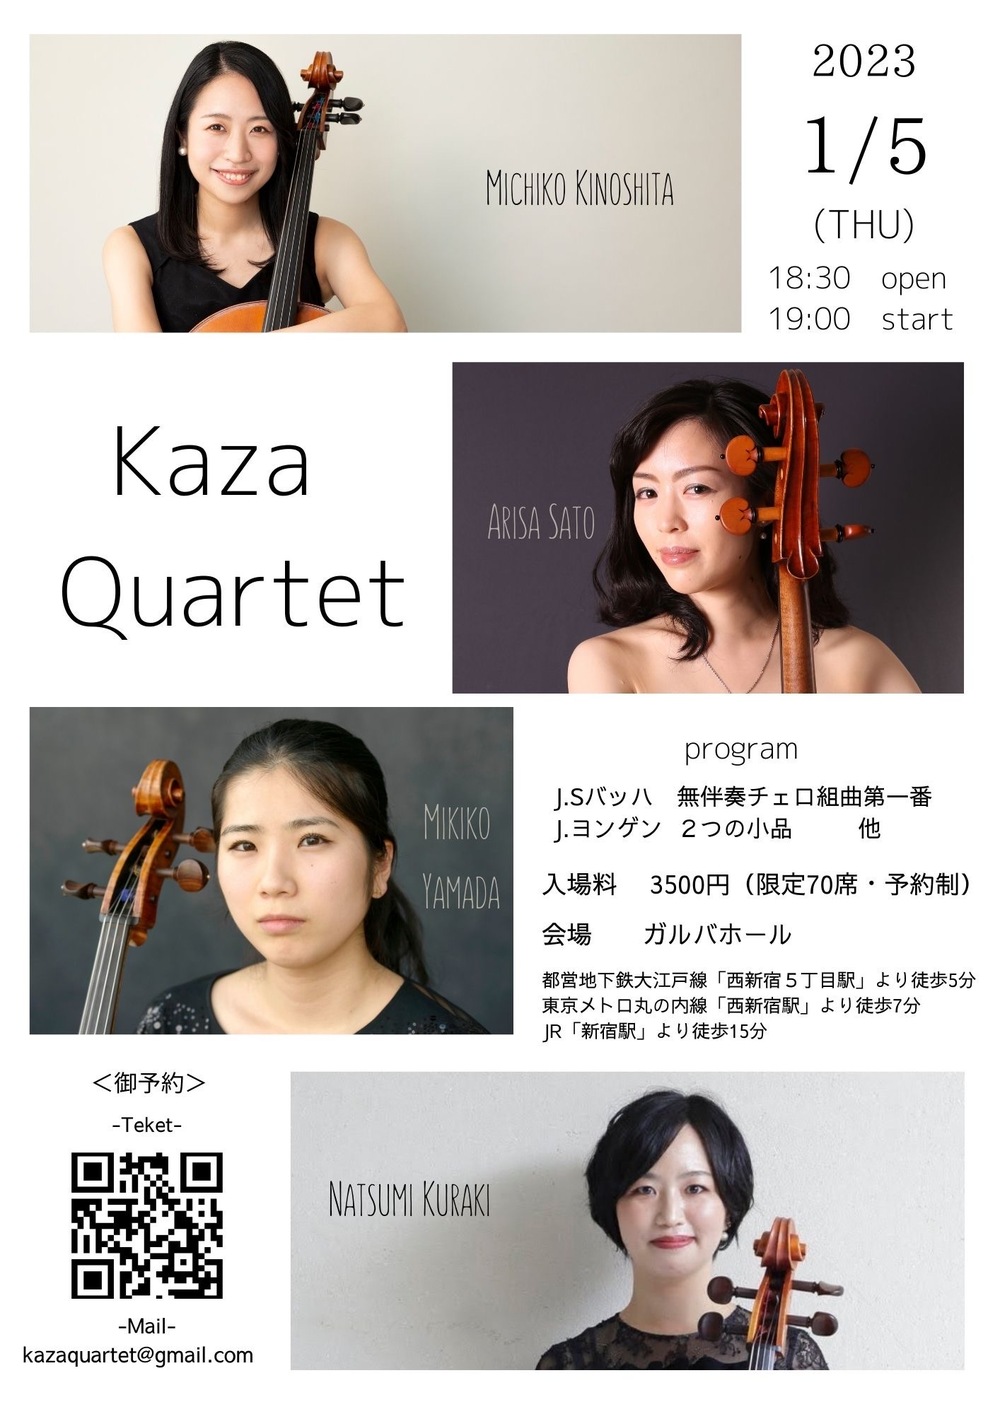 カザカルテットVol.１【Kaza Quartet】 | ガルバホール